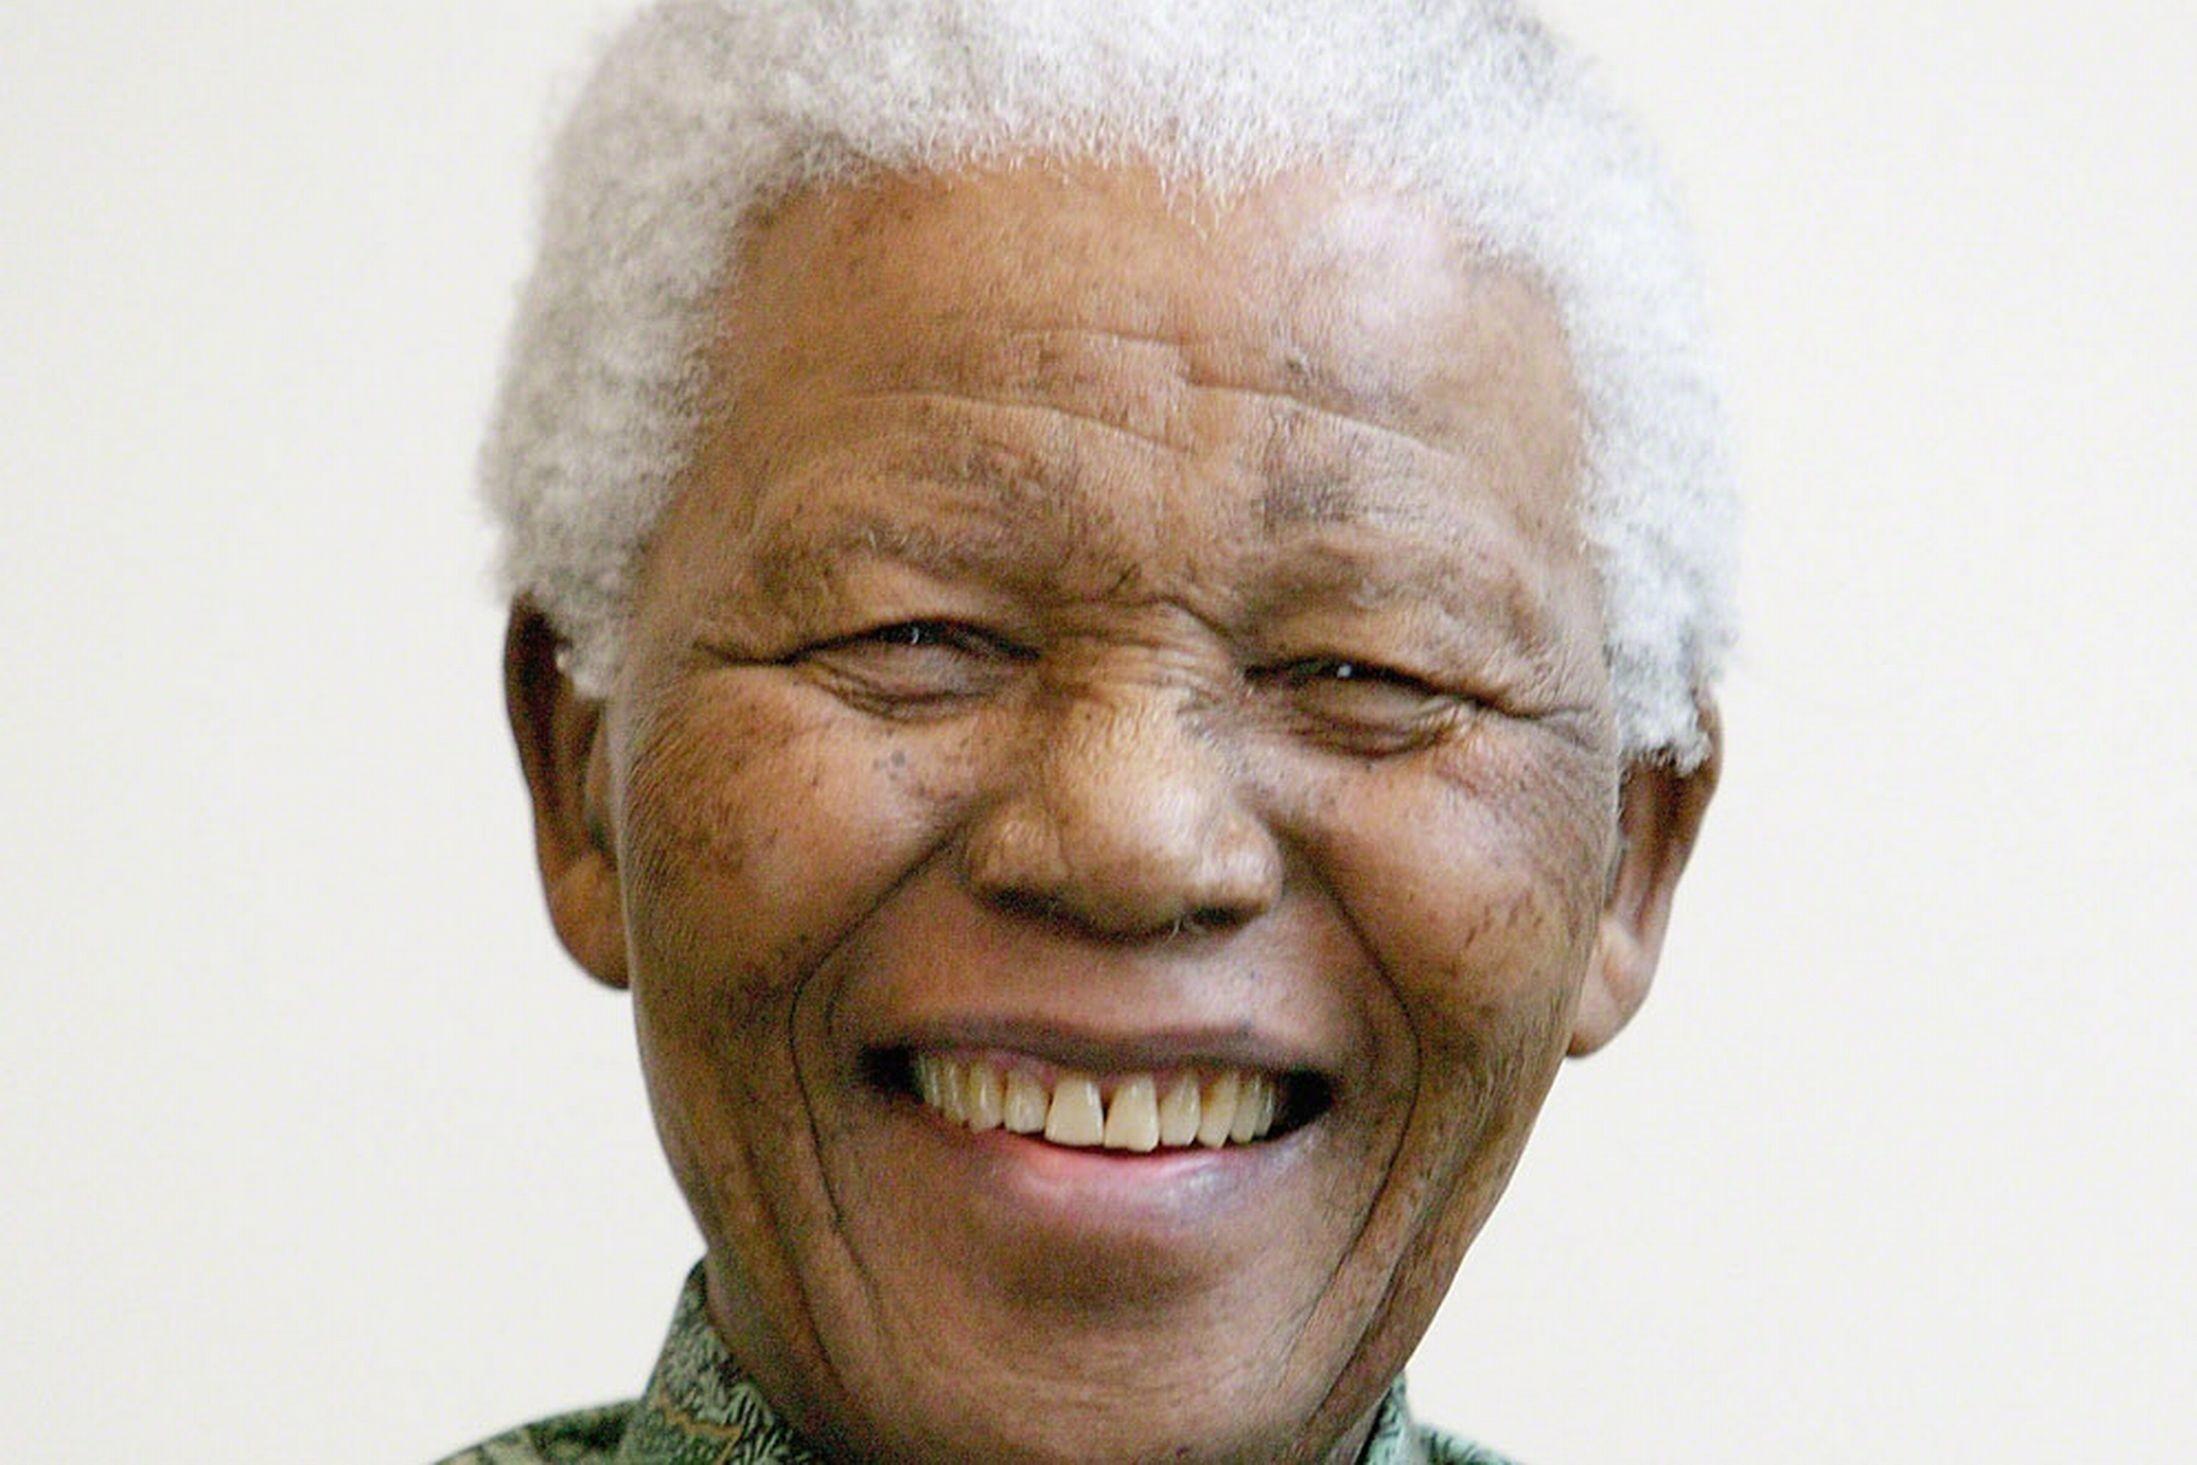 Nelson Mandela Wallpaper